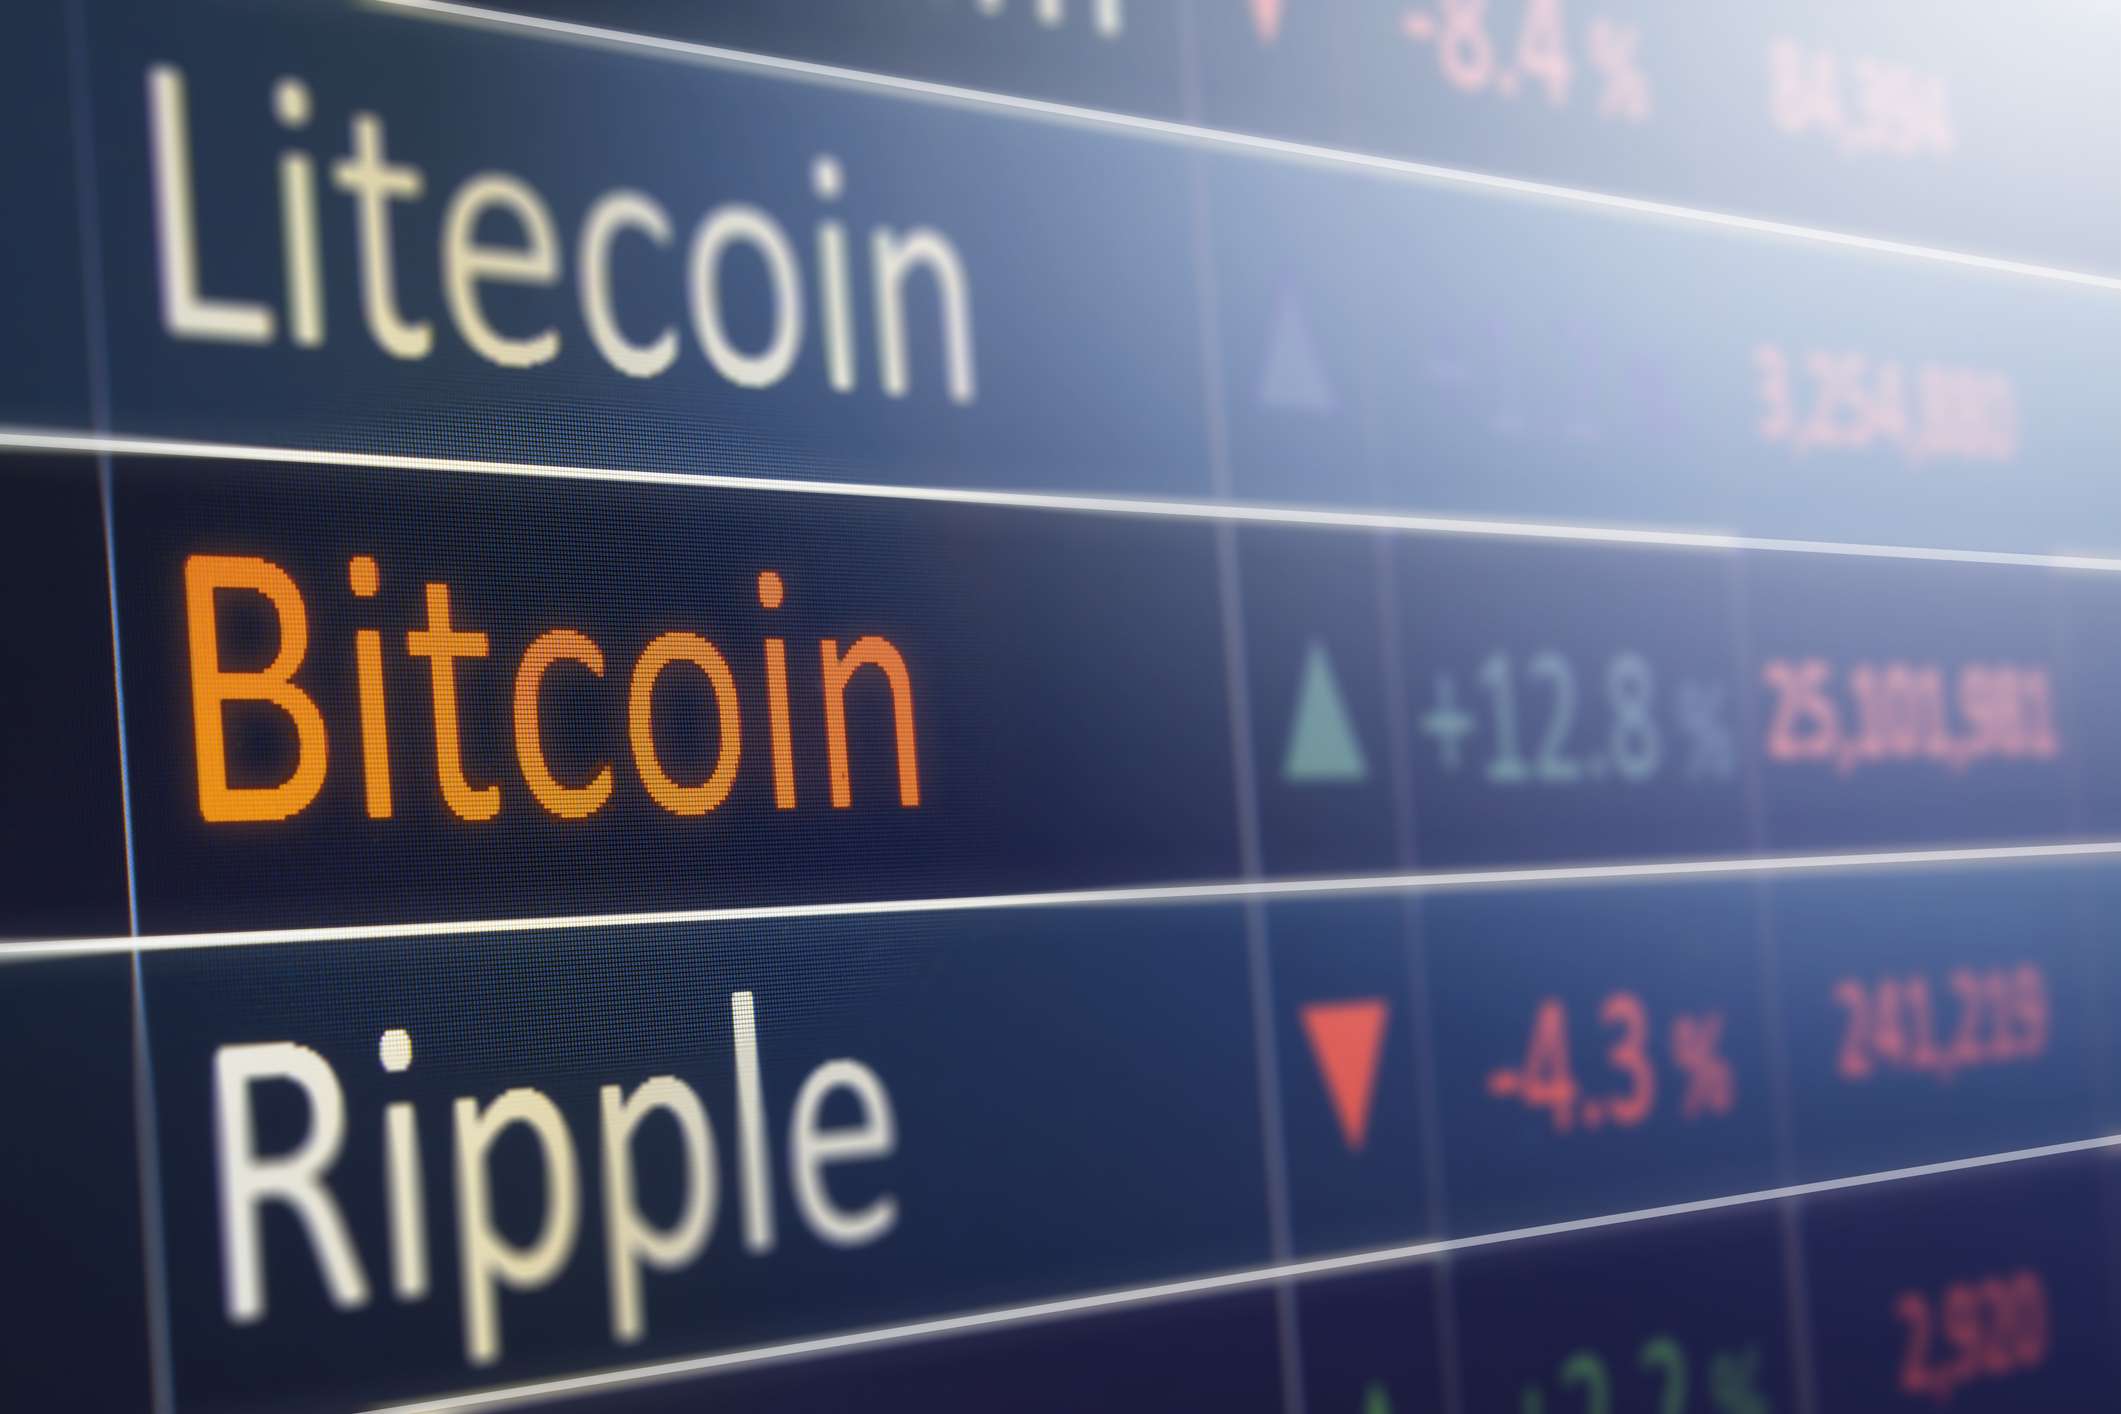 Detalhe dos valores de Litecoin, Bitcoin e Ripple aumentando e diminuindo